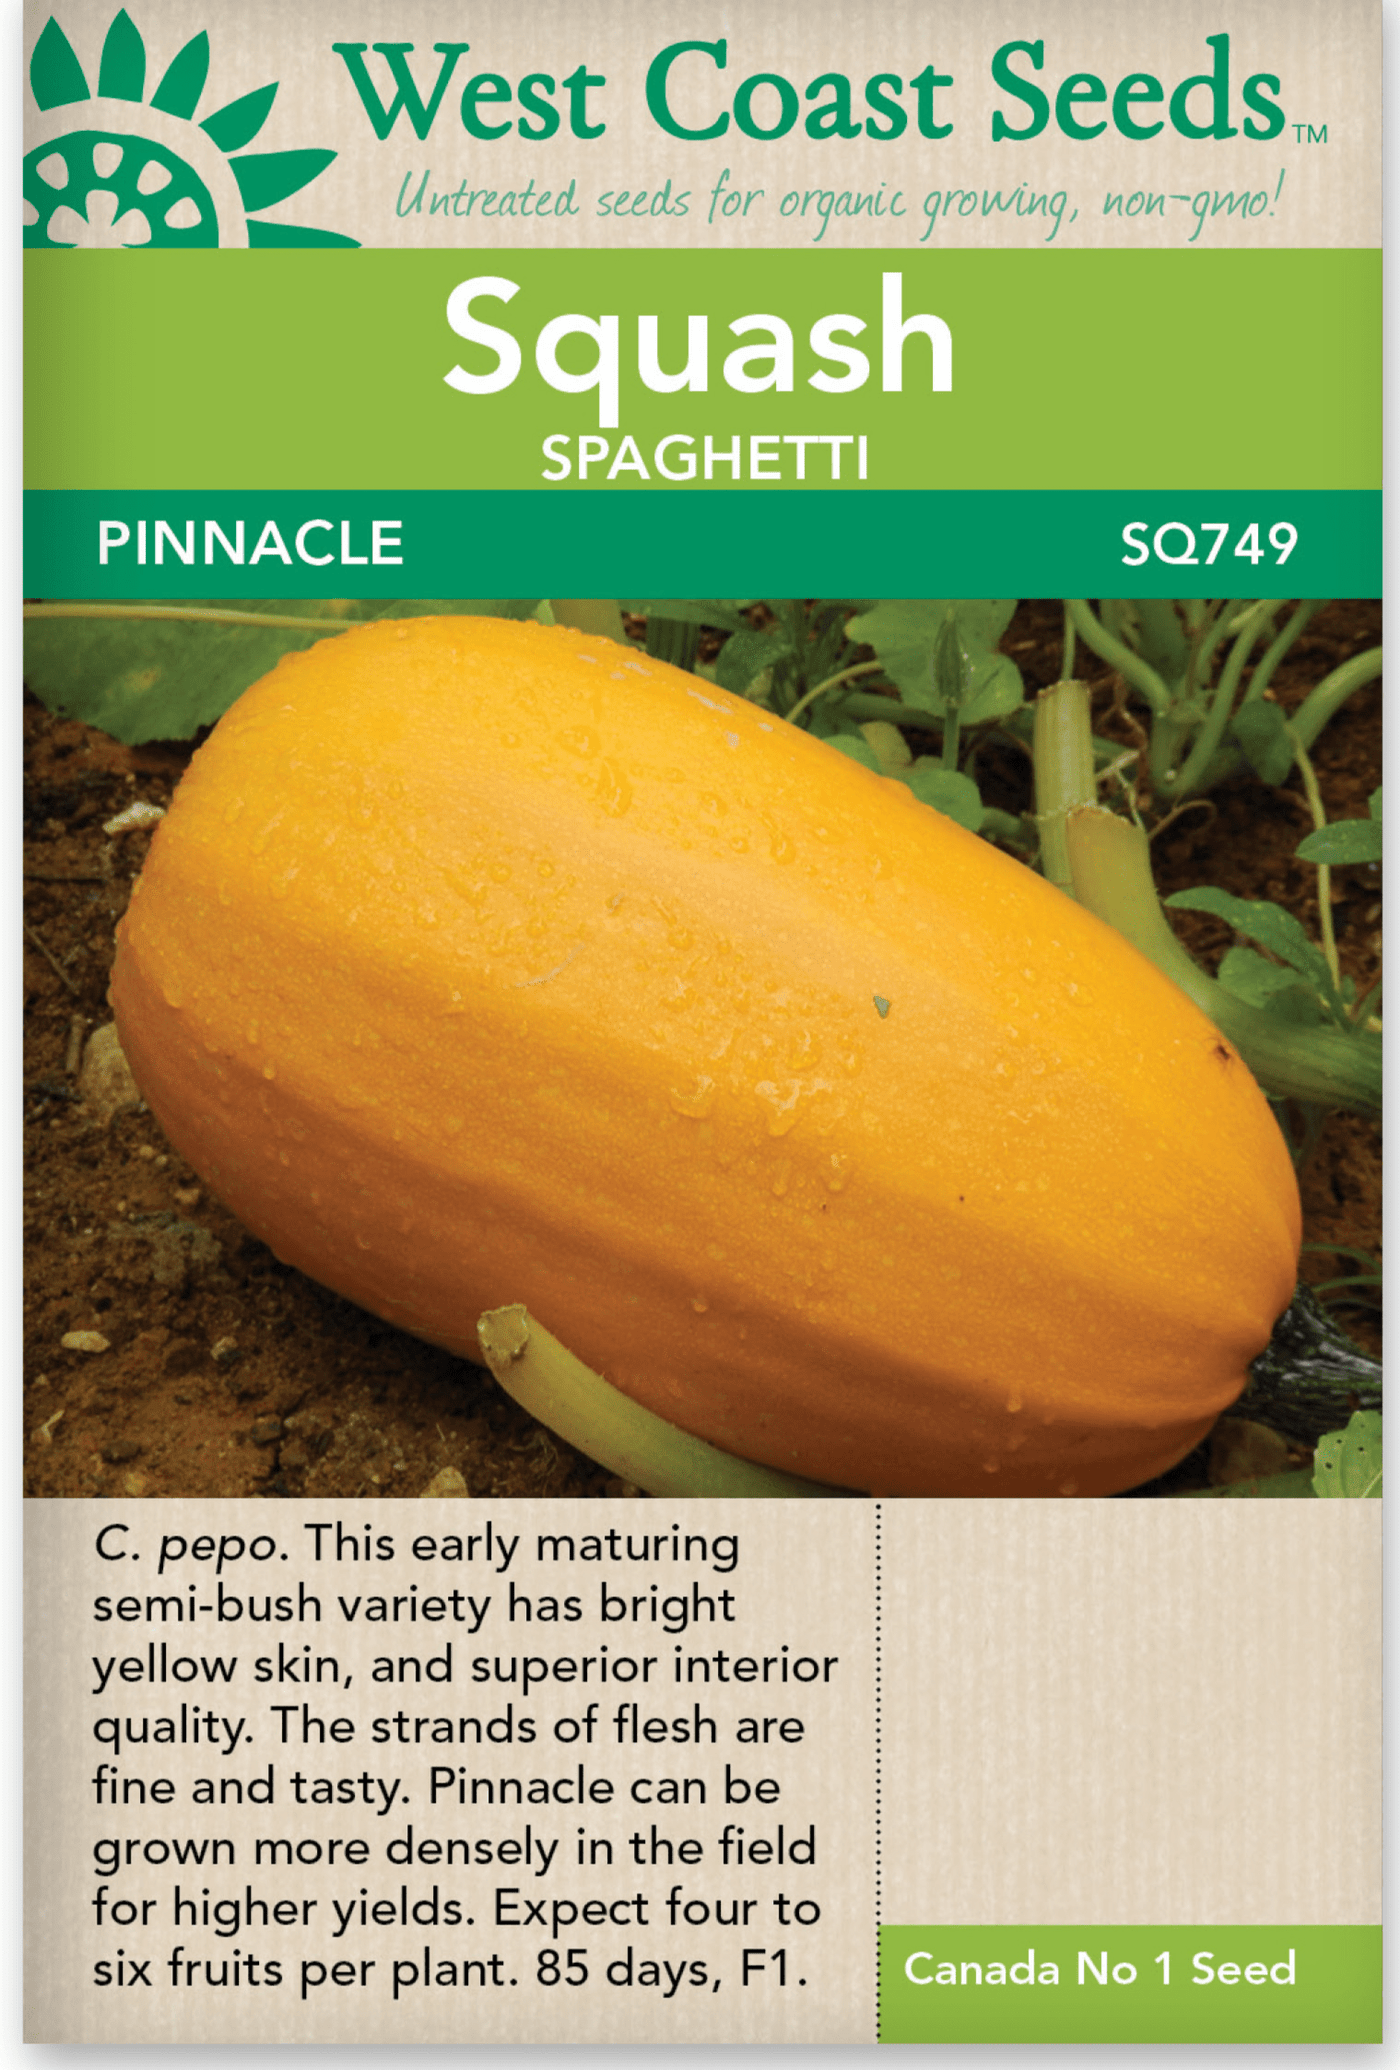 Squash Pinnacle - West Coast Seeds